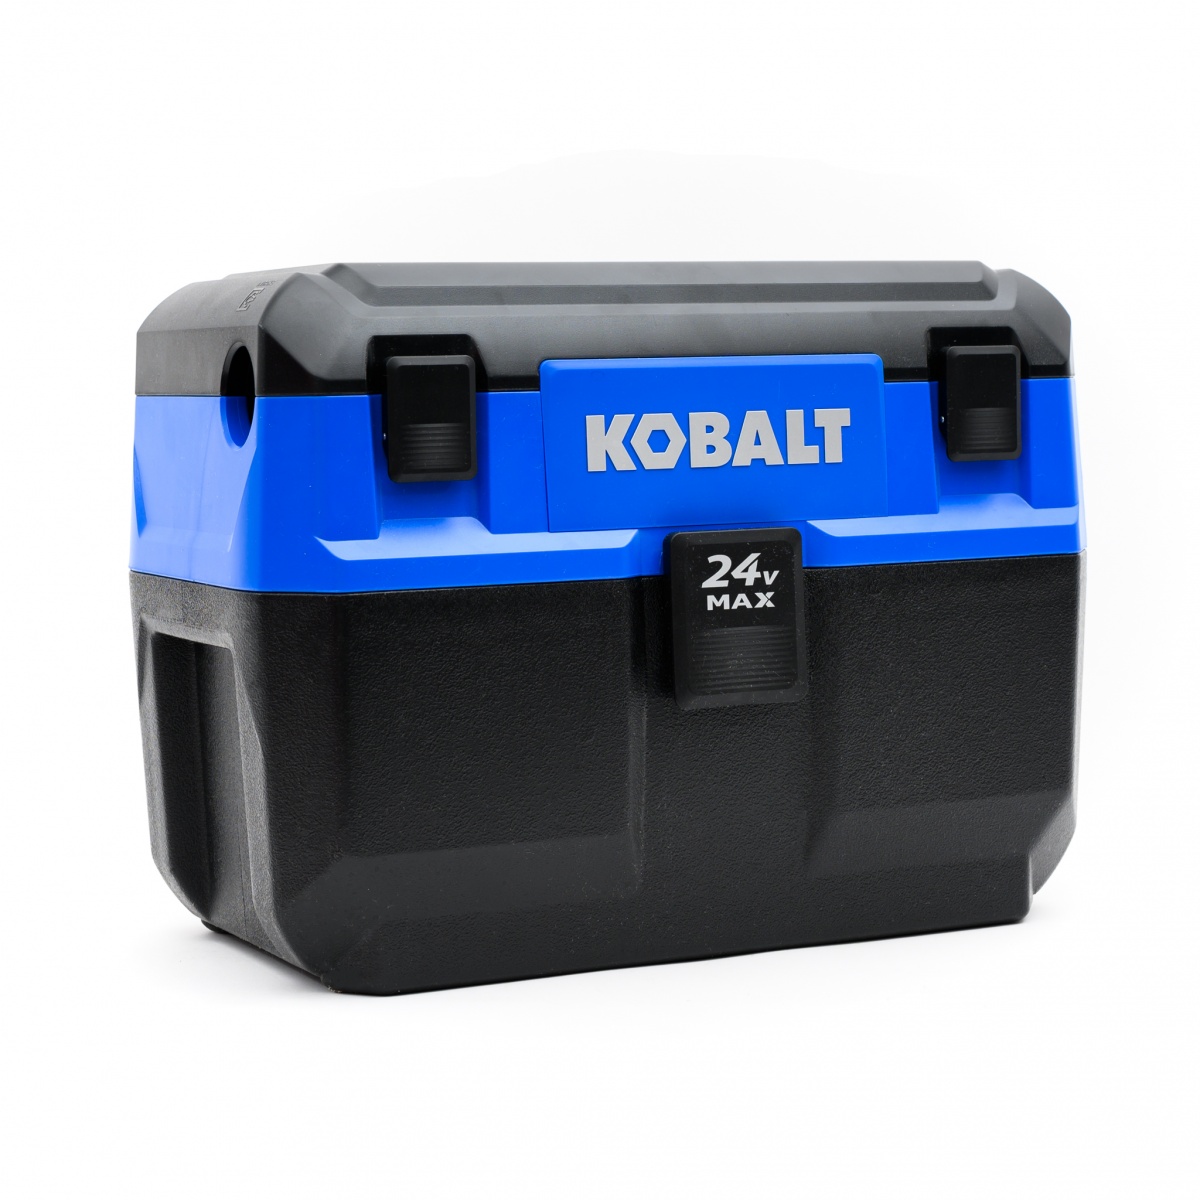 Kobalt KWDV 0124B-03 Review